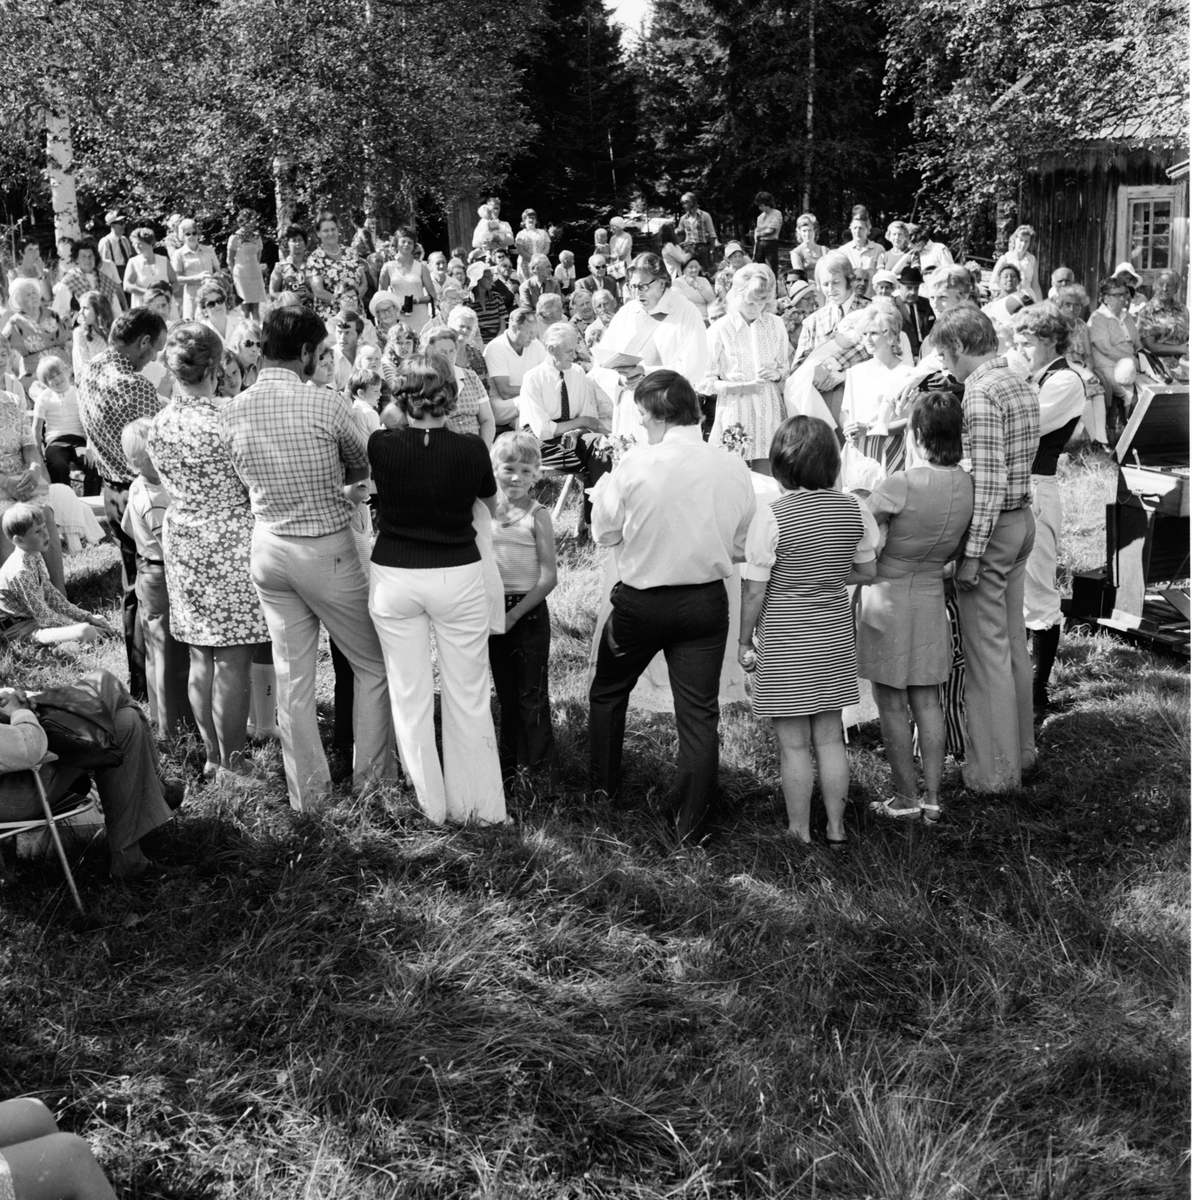 Dopcermoni på Möckelåsen.
Juli 1972